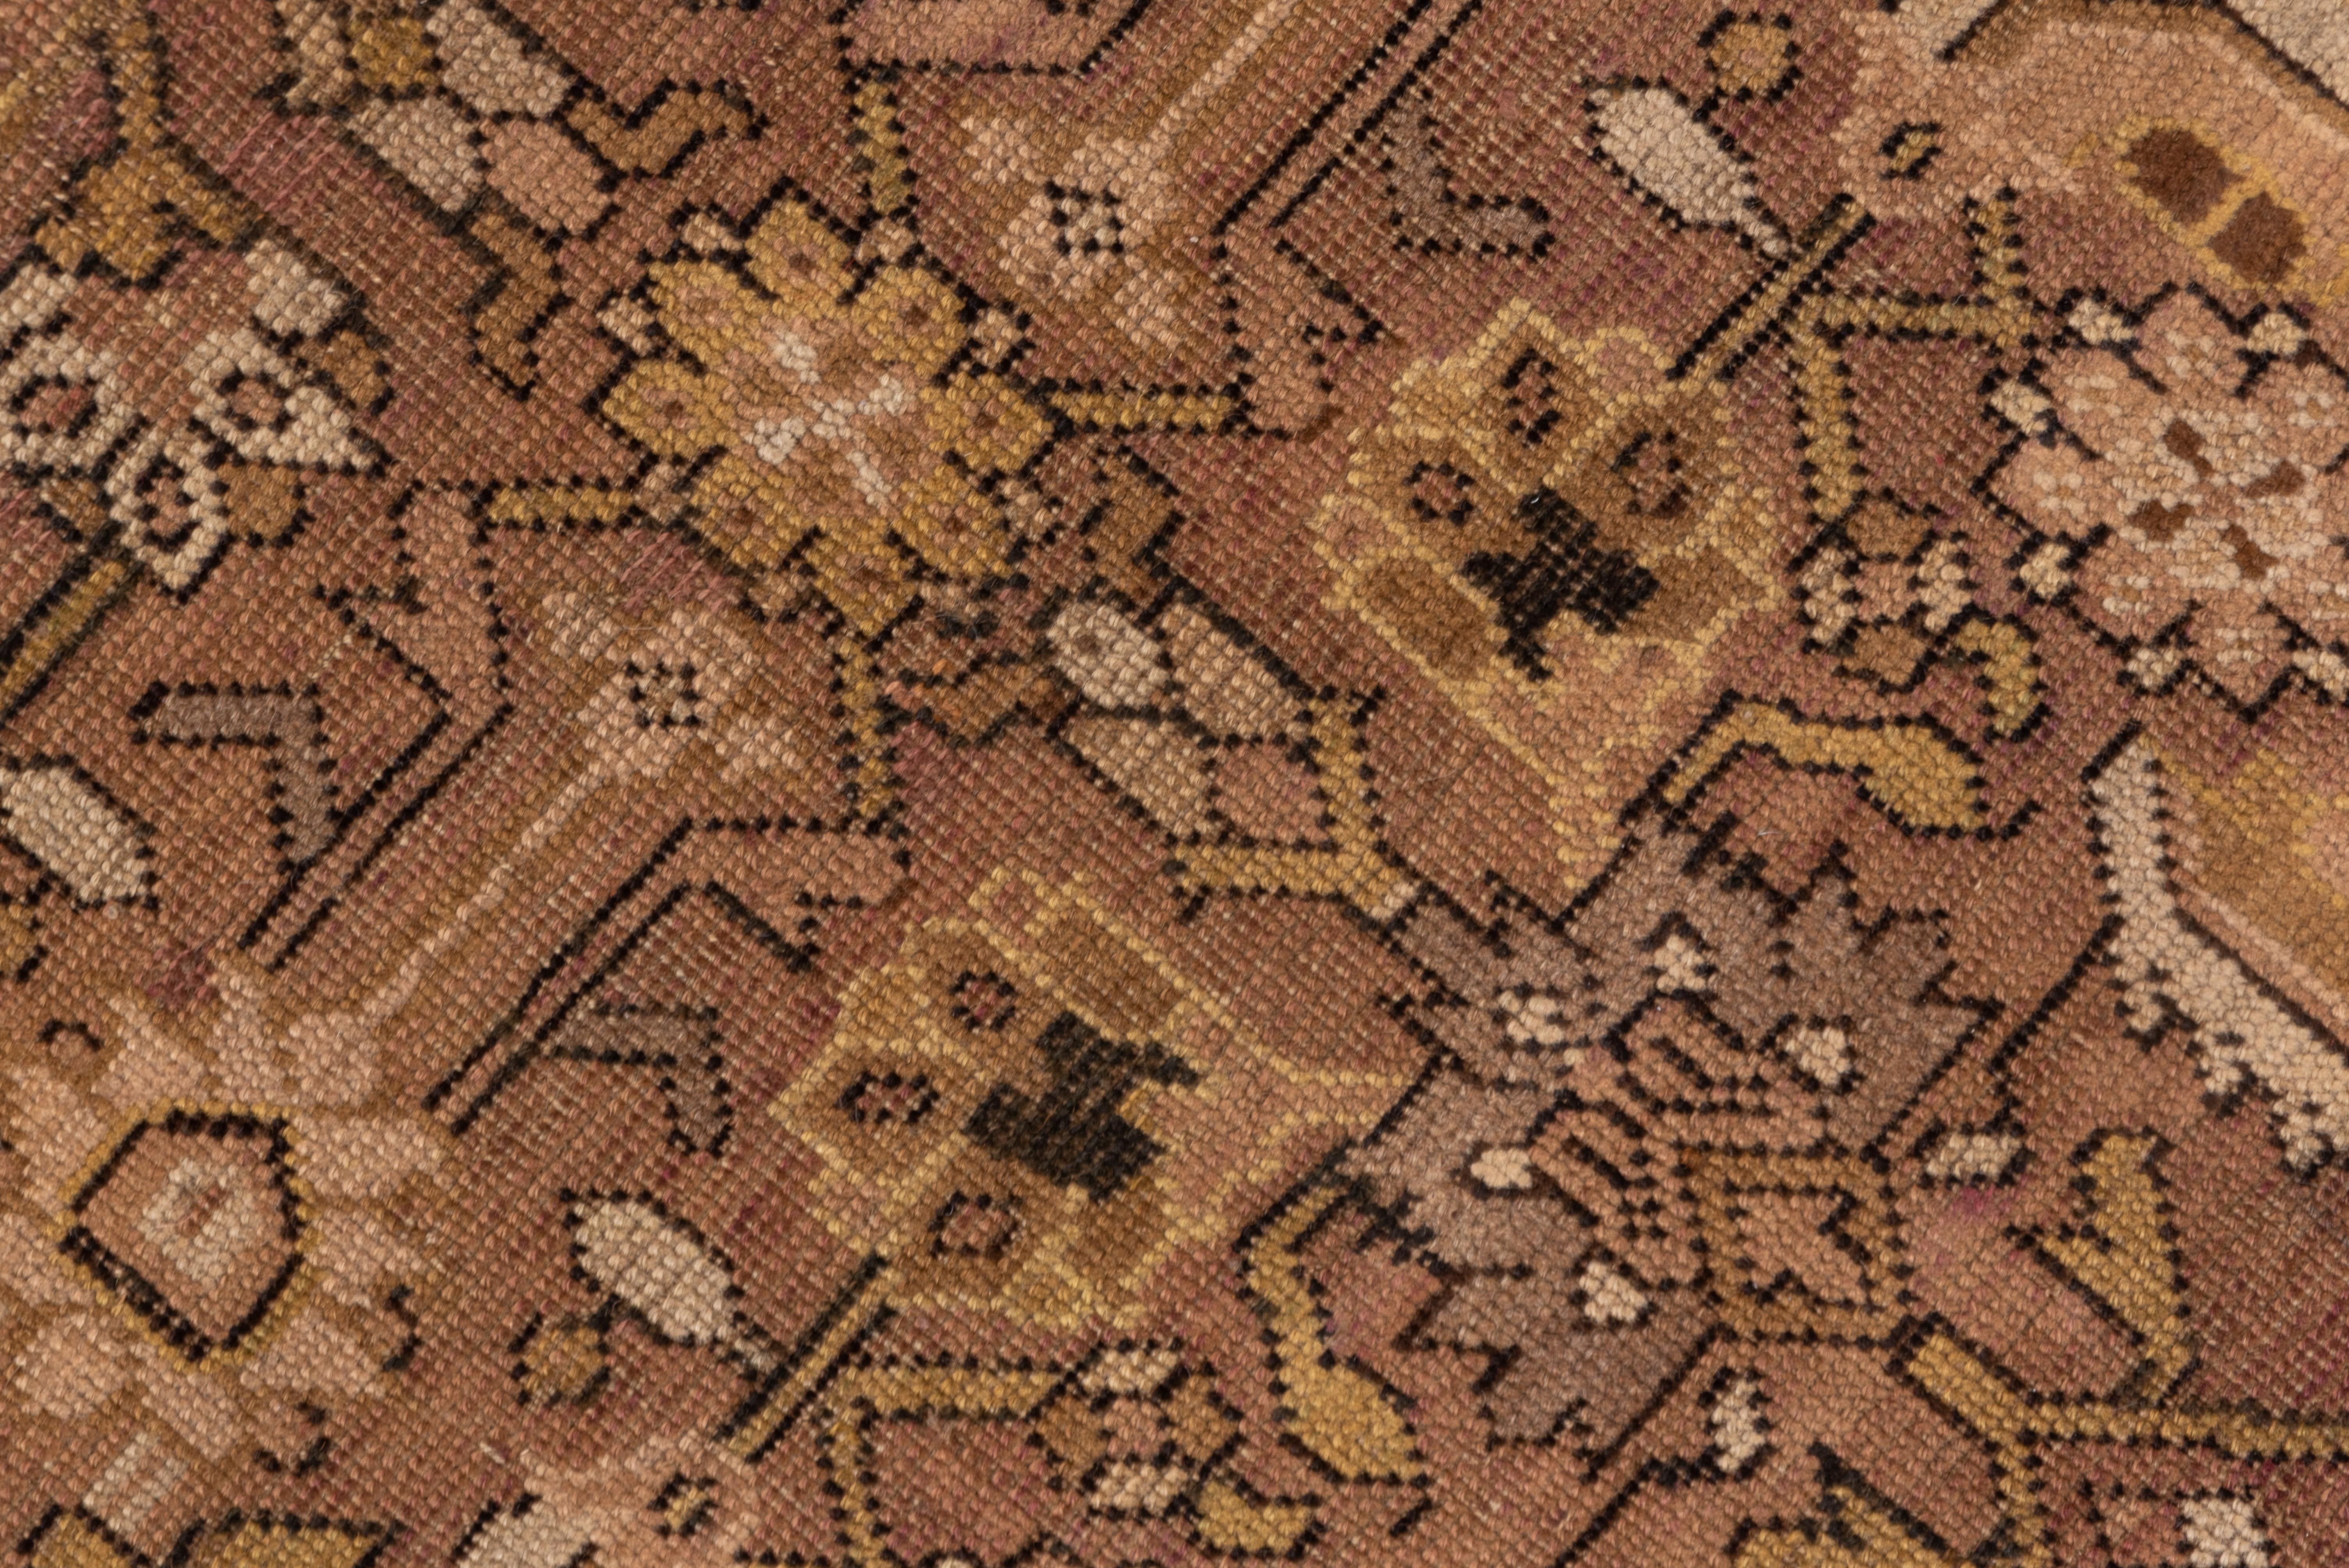 Dans un style persan, ce kellegi (tapis long) du Caucase du Sud présente un motif Herati avec de grosses feuilles dominant de petites rosettes, le tout sur un fond brun clair. Bordure principale brun terre de sienne avec palmettes en éventail